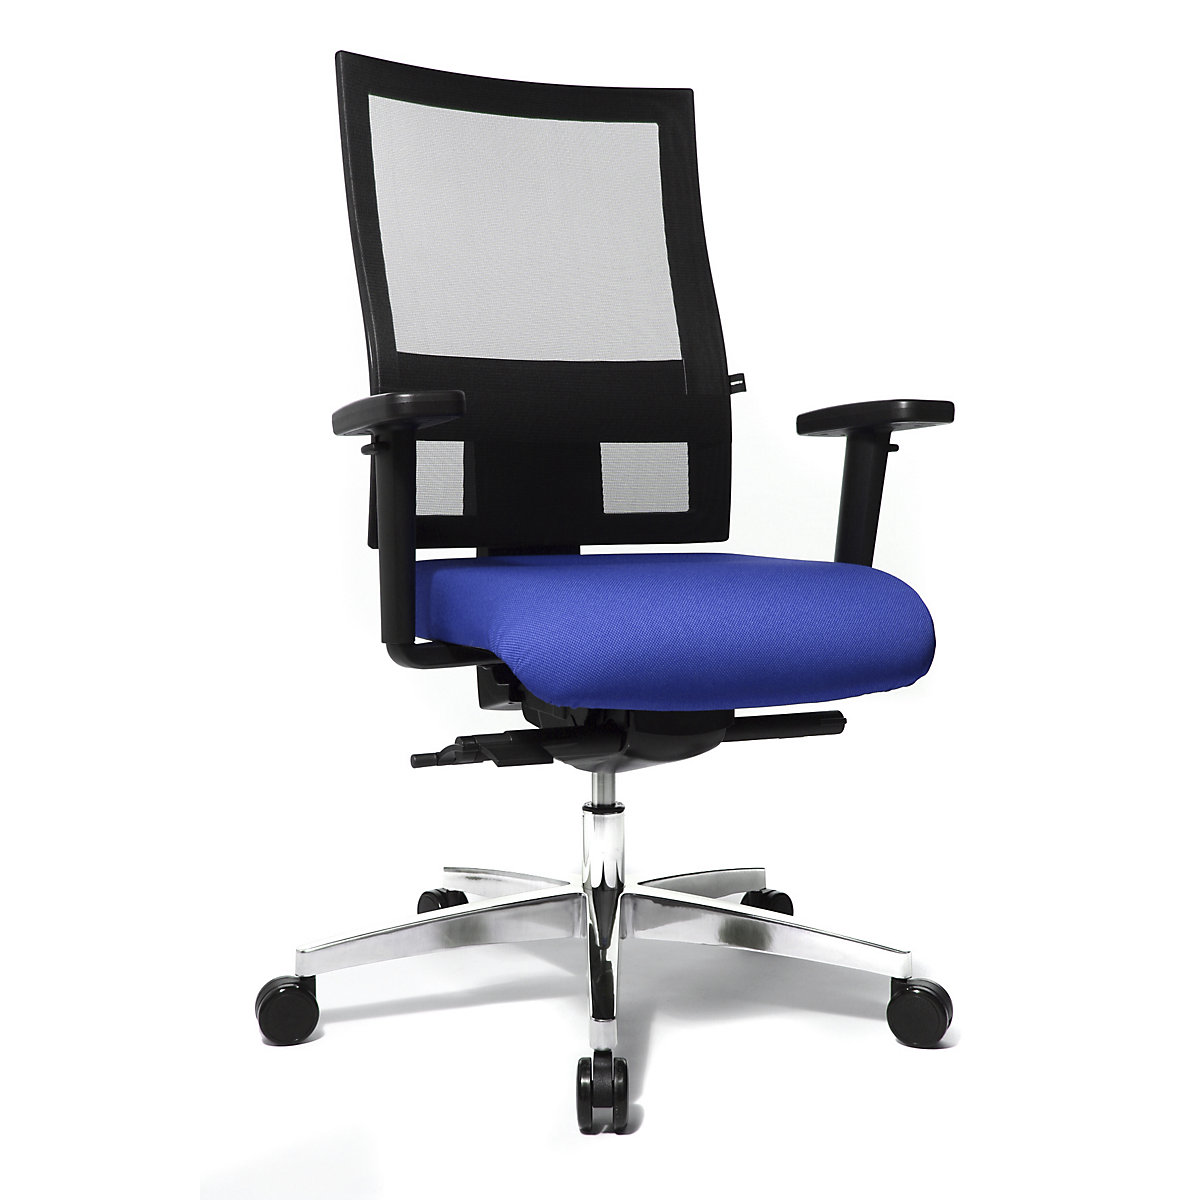 Sedia girevole da ufficio SITNESS 60 – Topstar, con schienale traspirante, braccioli inclusi, blu / nero-4